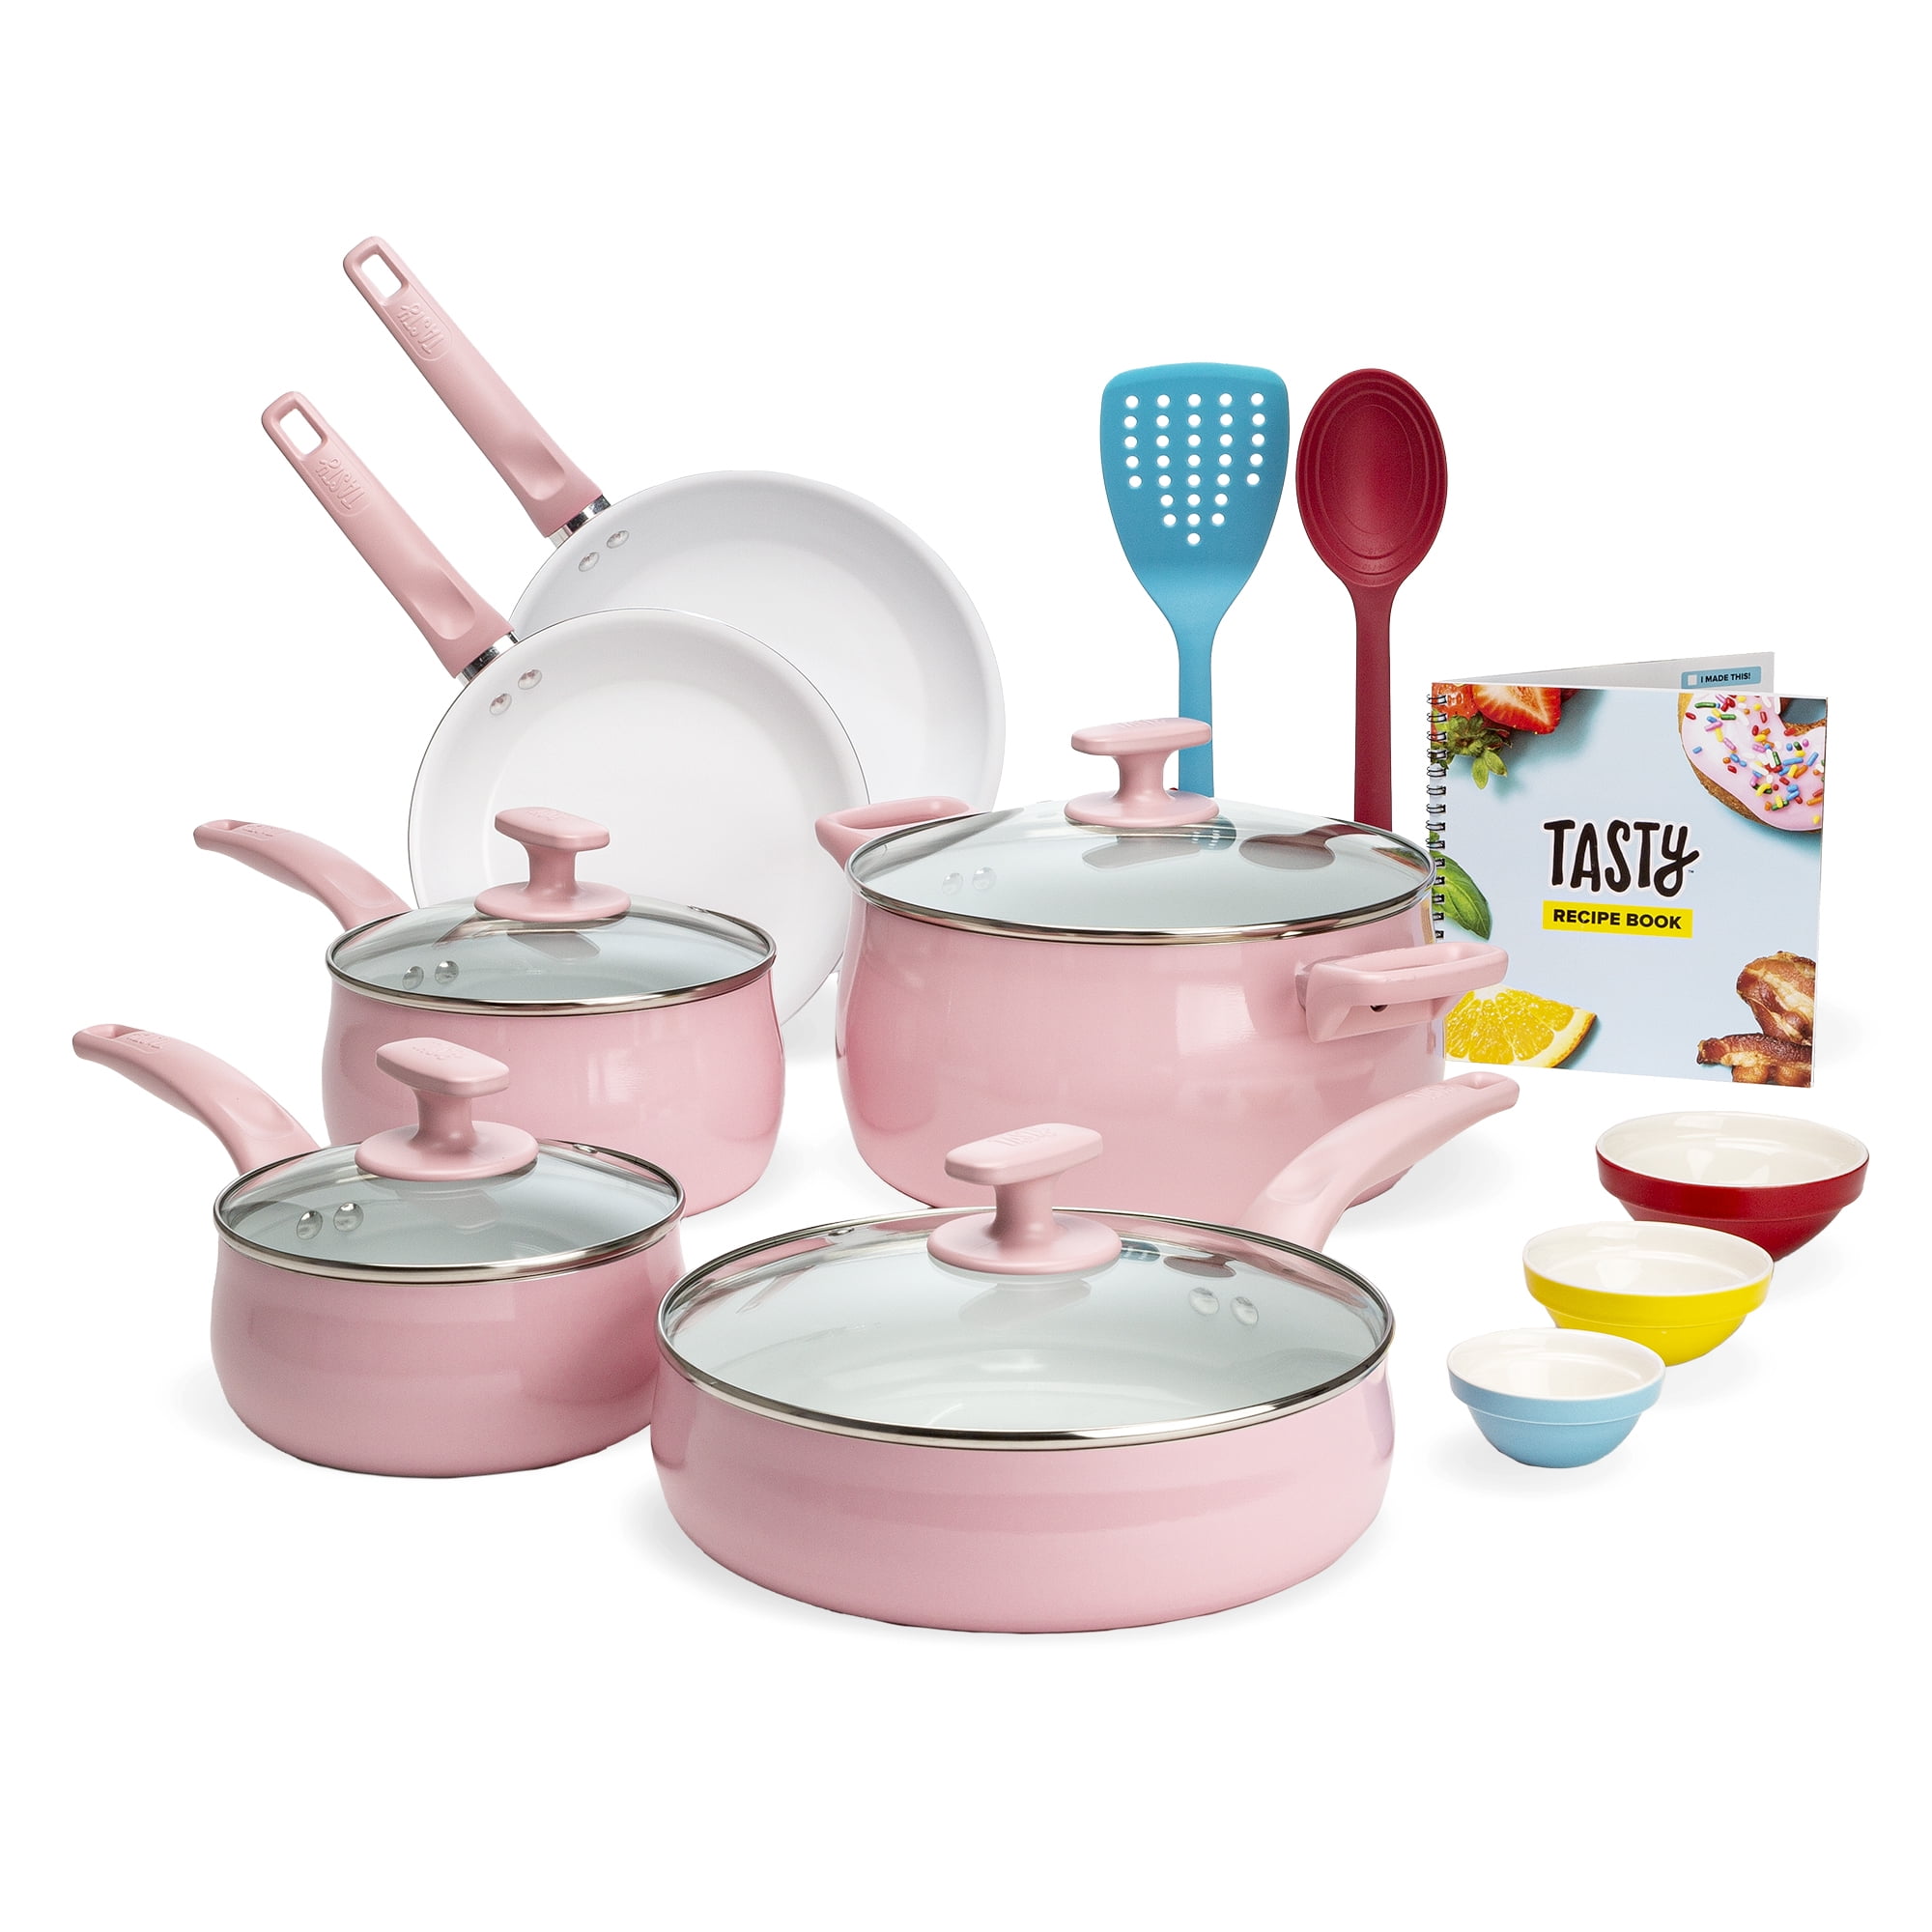 aluminum non-stick cookware set pink color